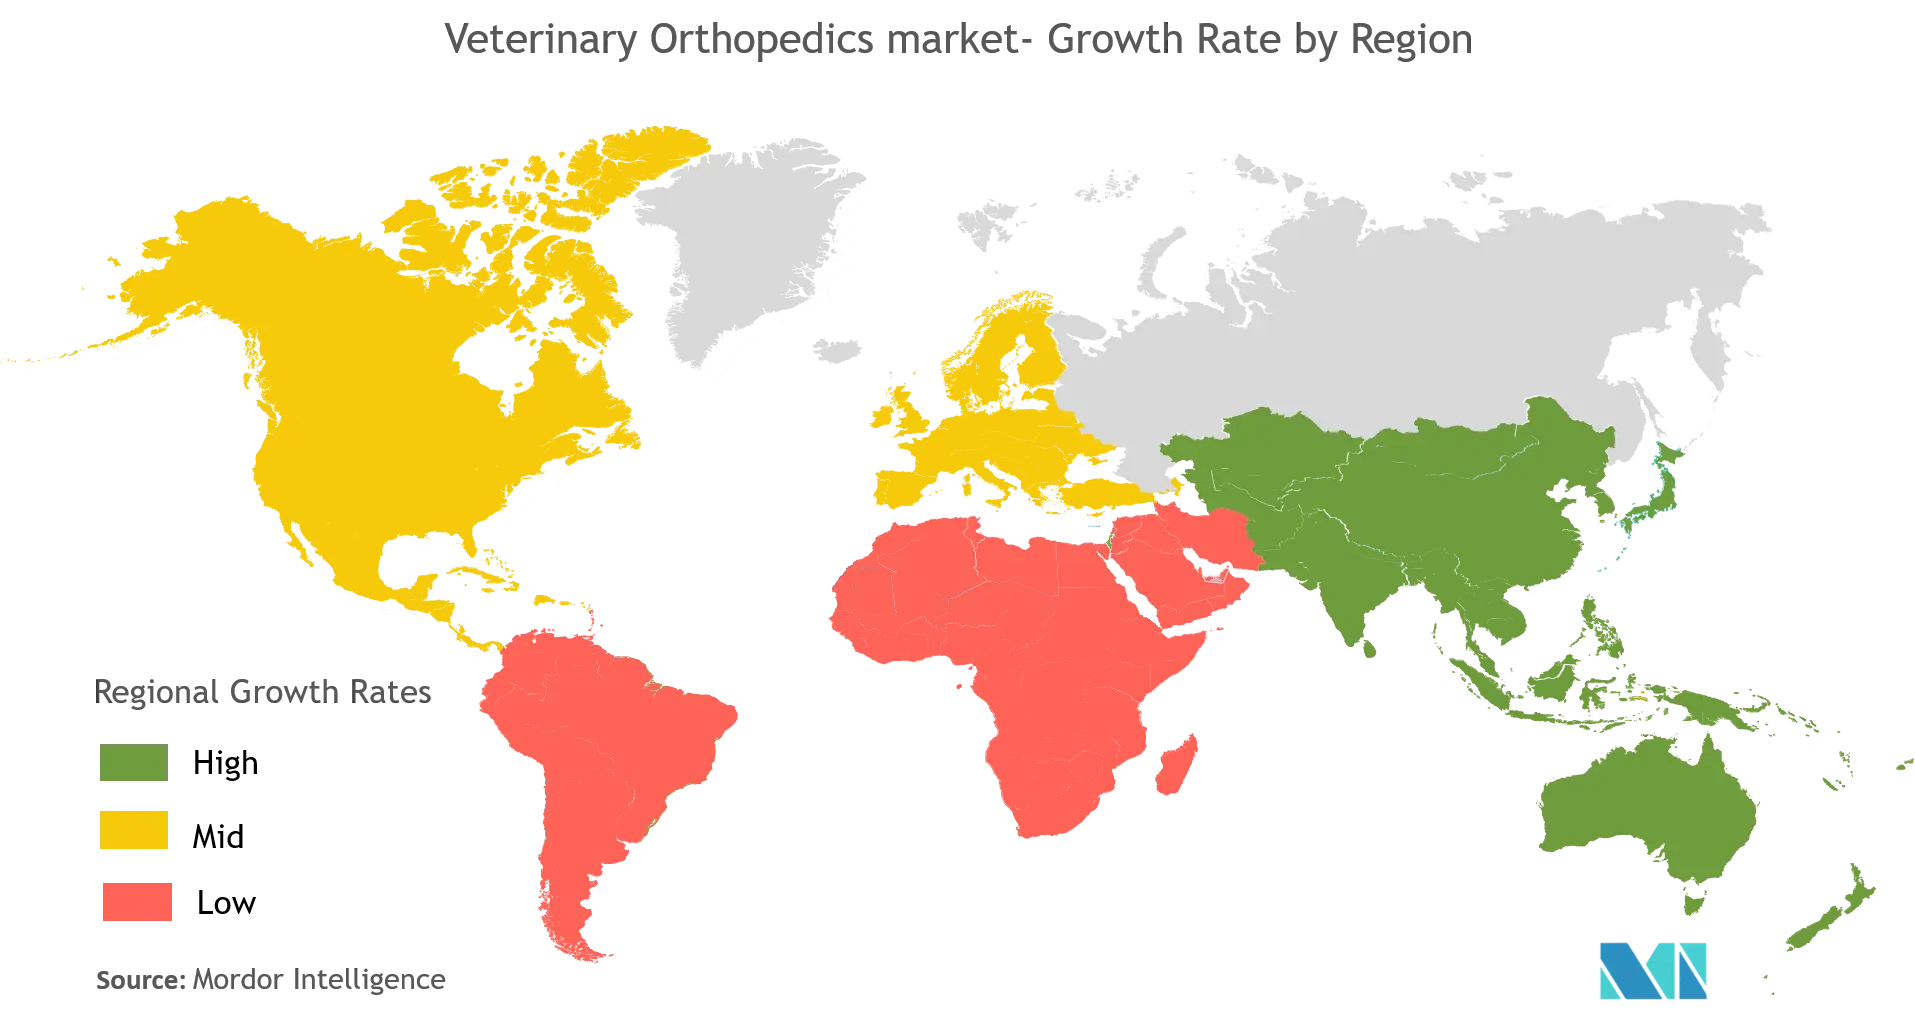 veterinary orthopedics market growth by region